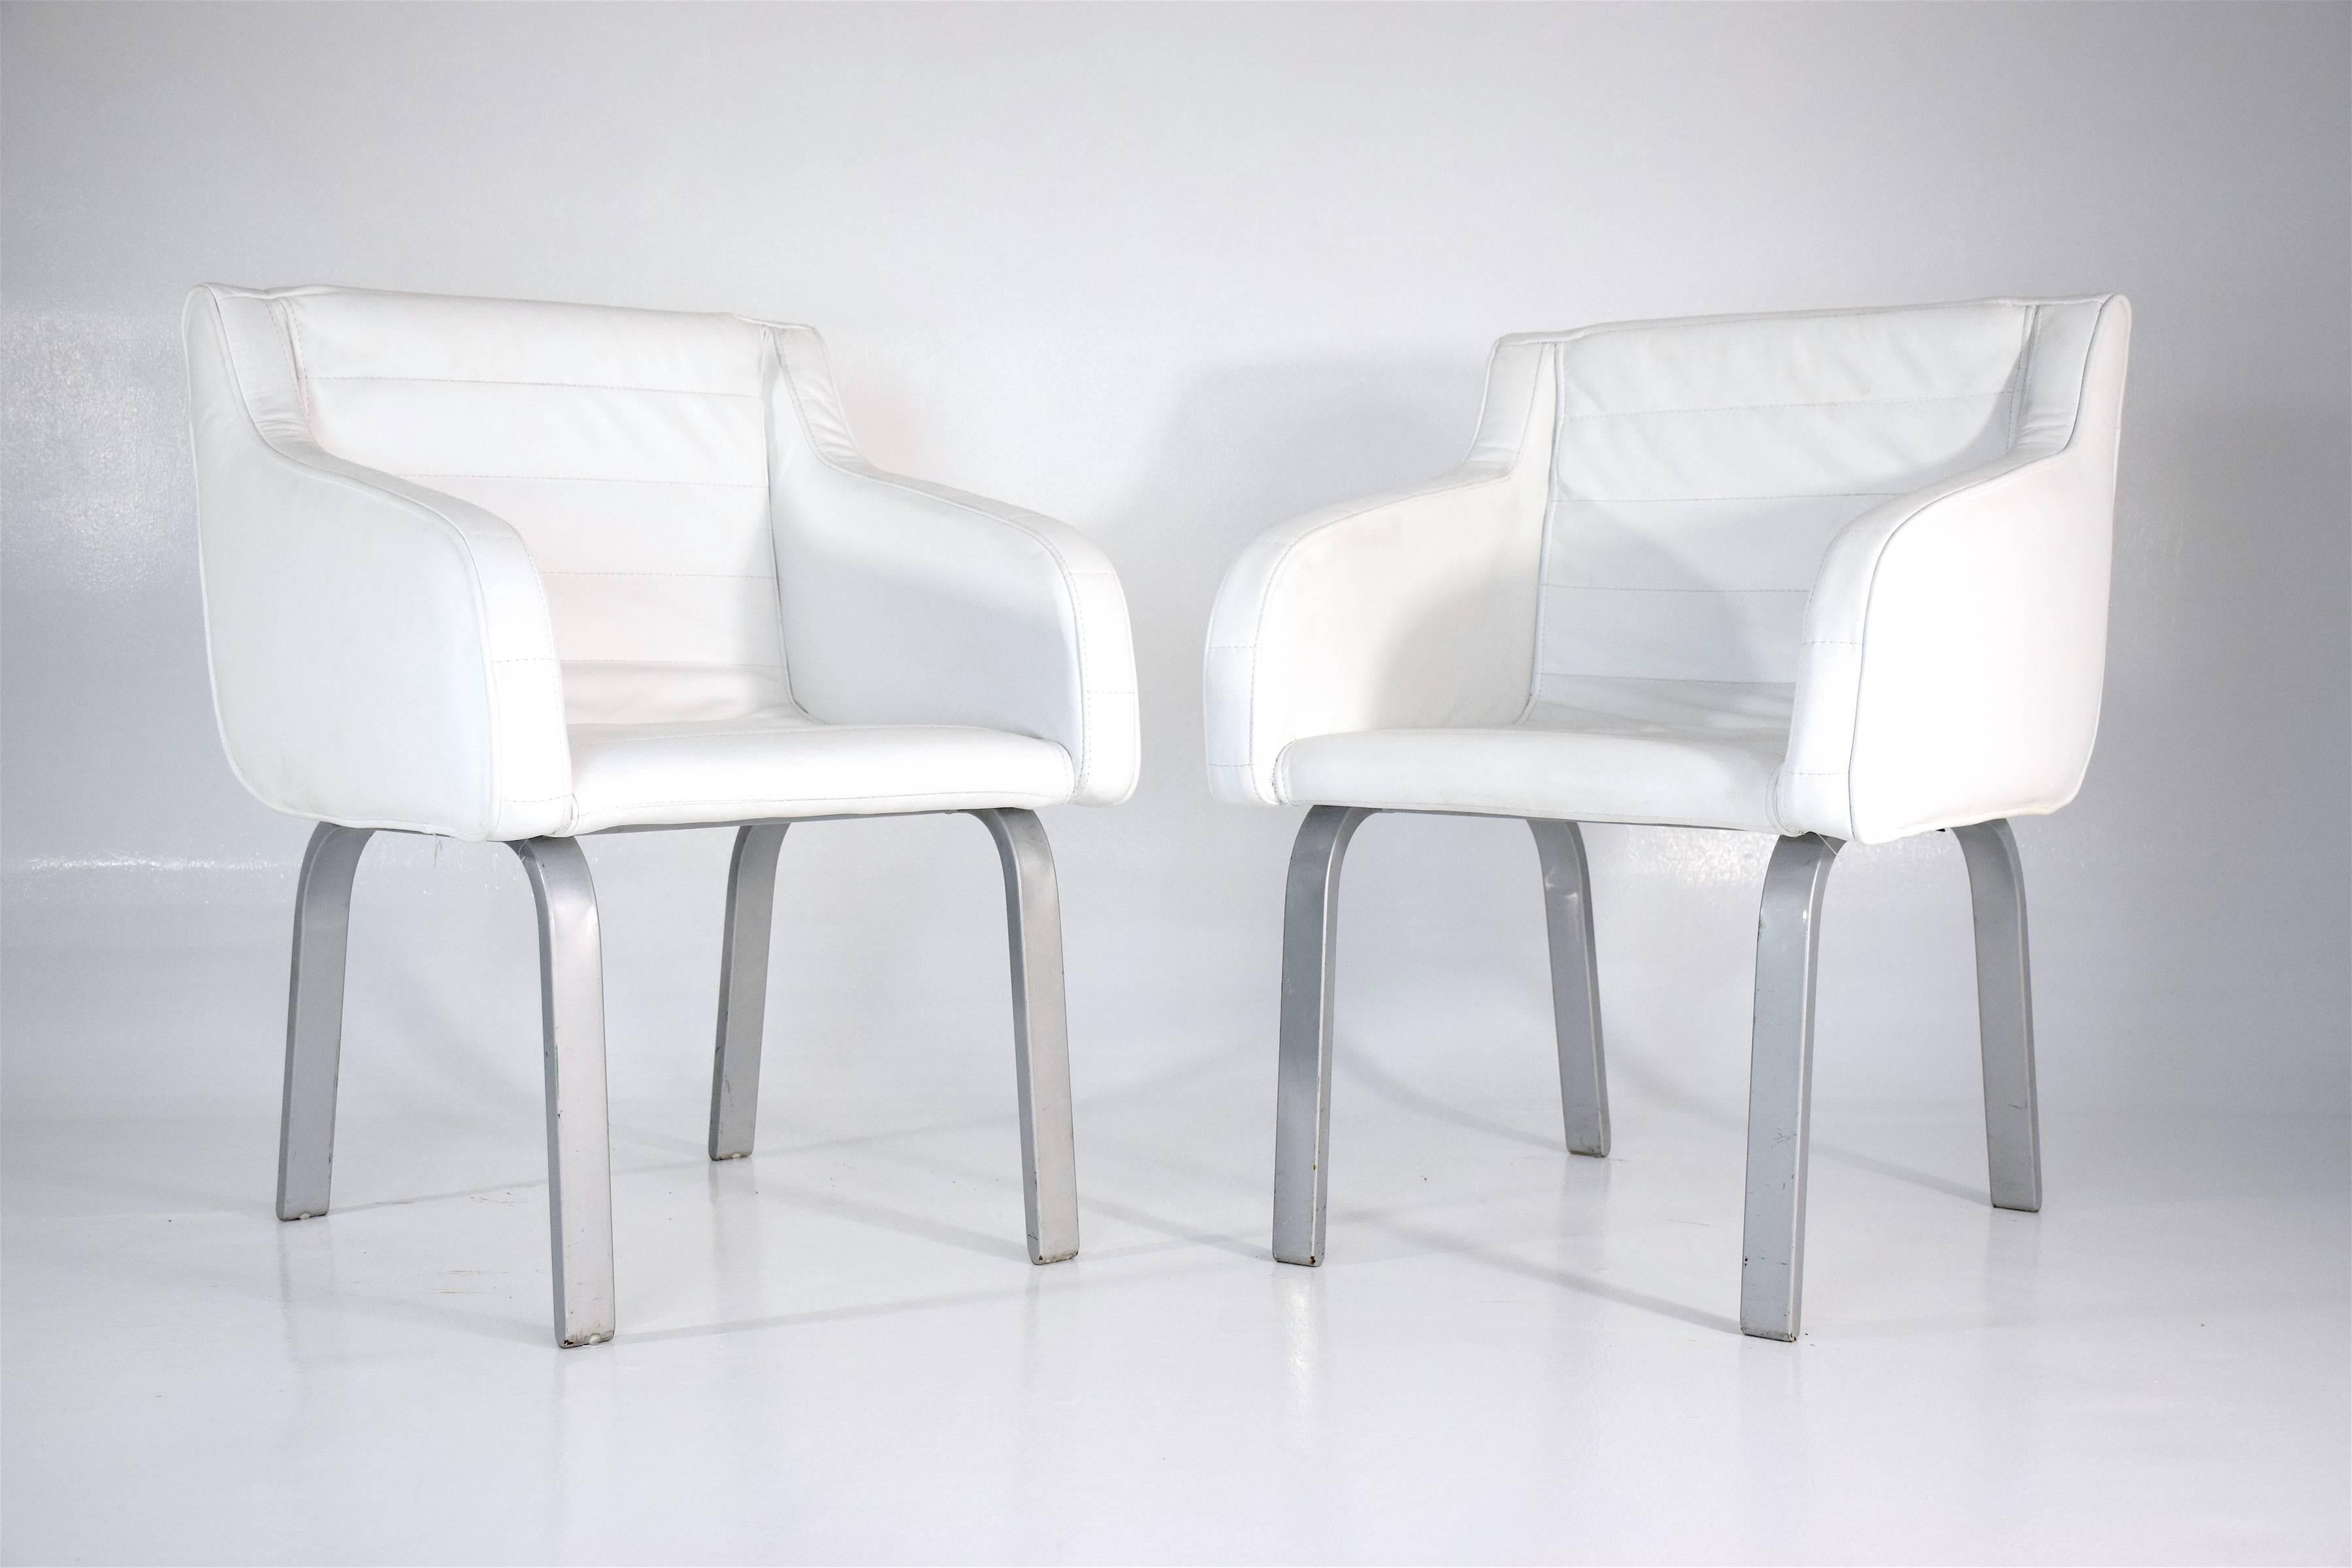 vintage-Sesselpaar aus dem 20. Jahrhundert, das der französische Architekt Christian Biecher 1999 für das Pariser Elitelokal Le Korova entworfen hat. Diese wurden von dem renommierten italienischen Möbelhersteller Poltrona Frau herausgegeben.

Diese